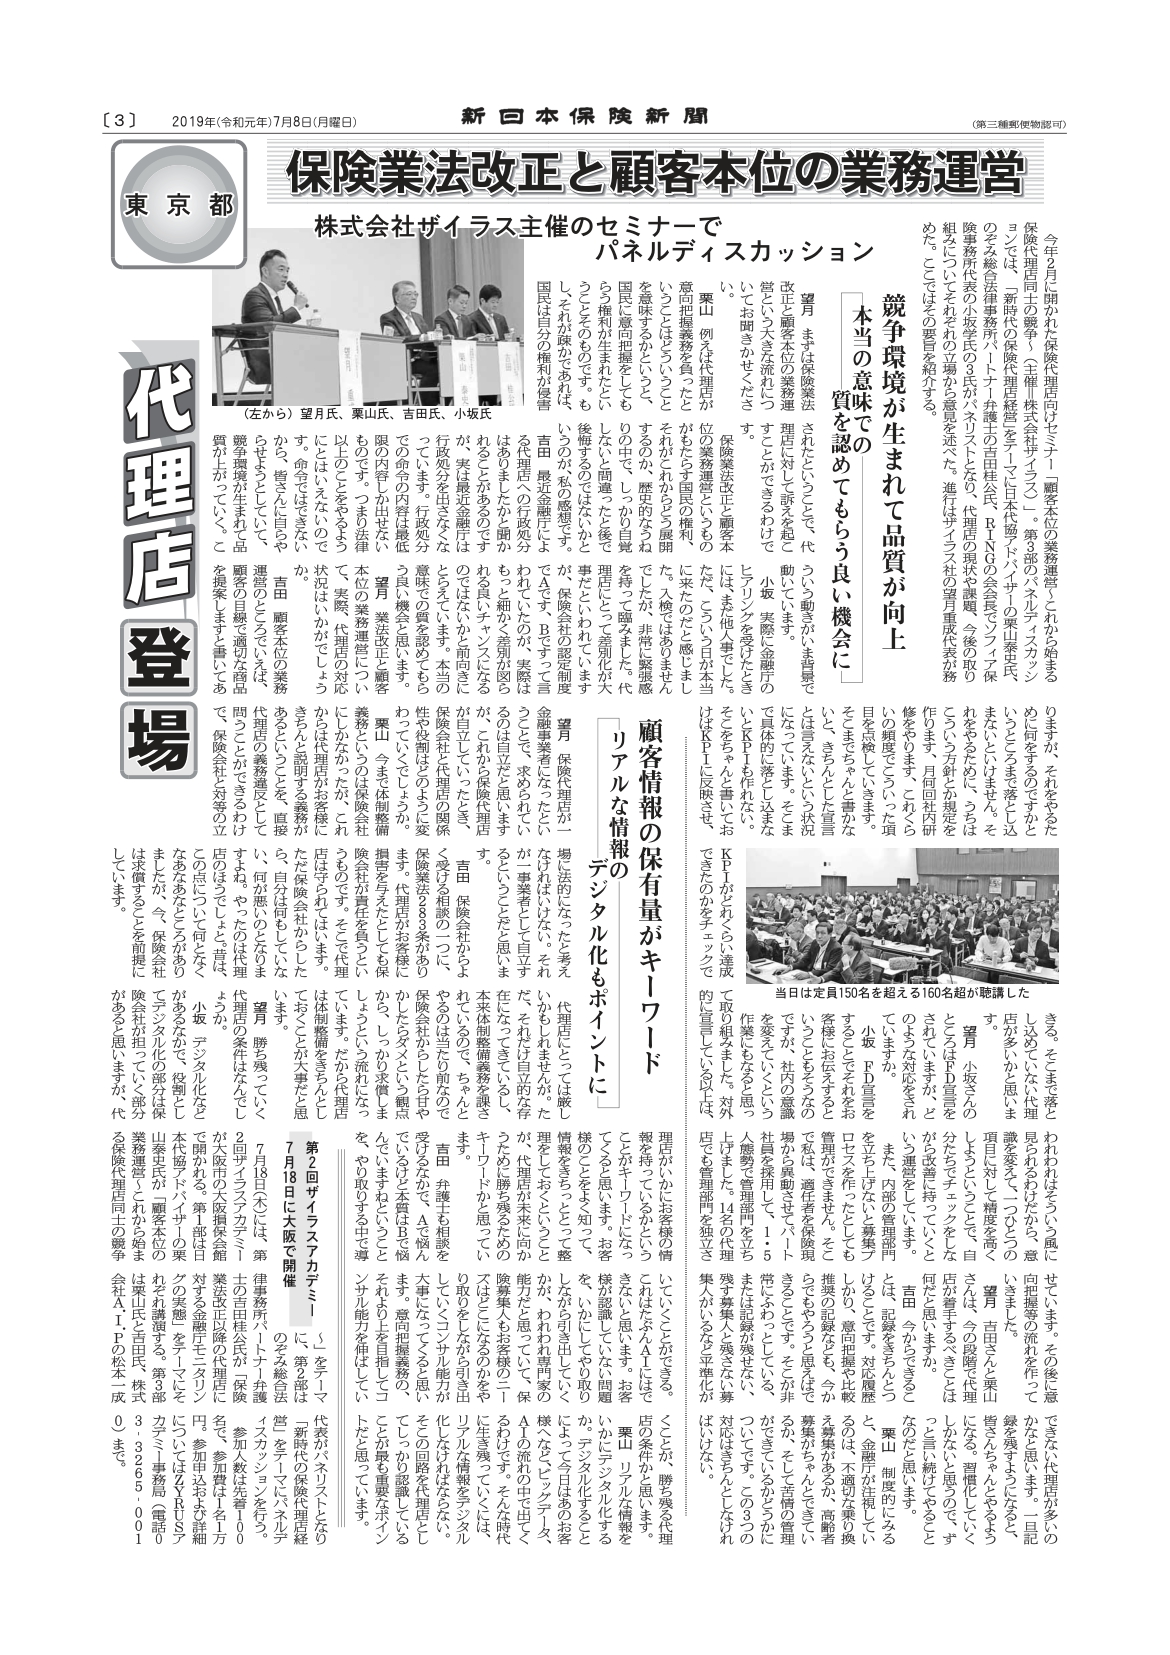 2019.7.8 新日本保険新聞